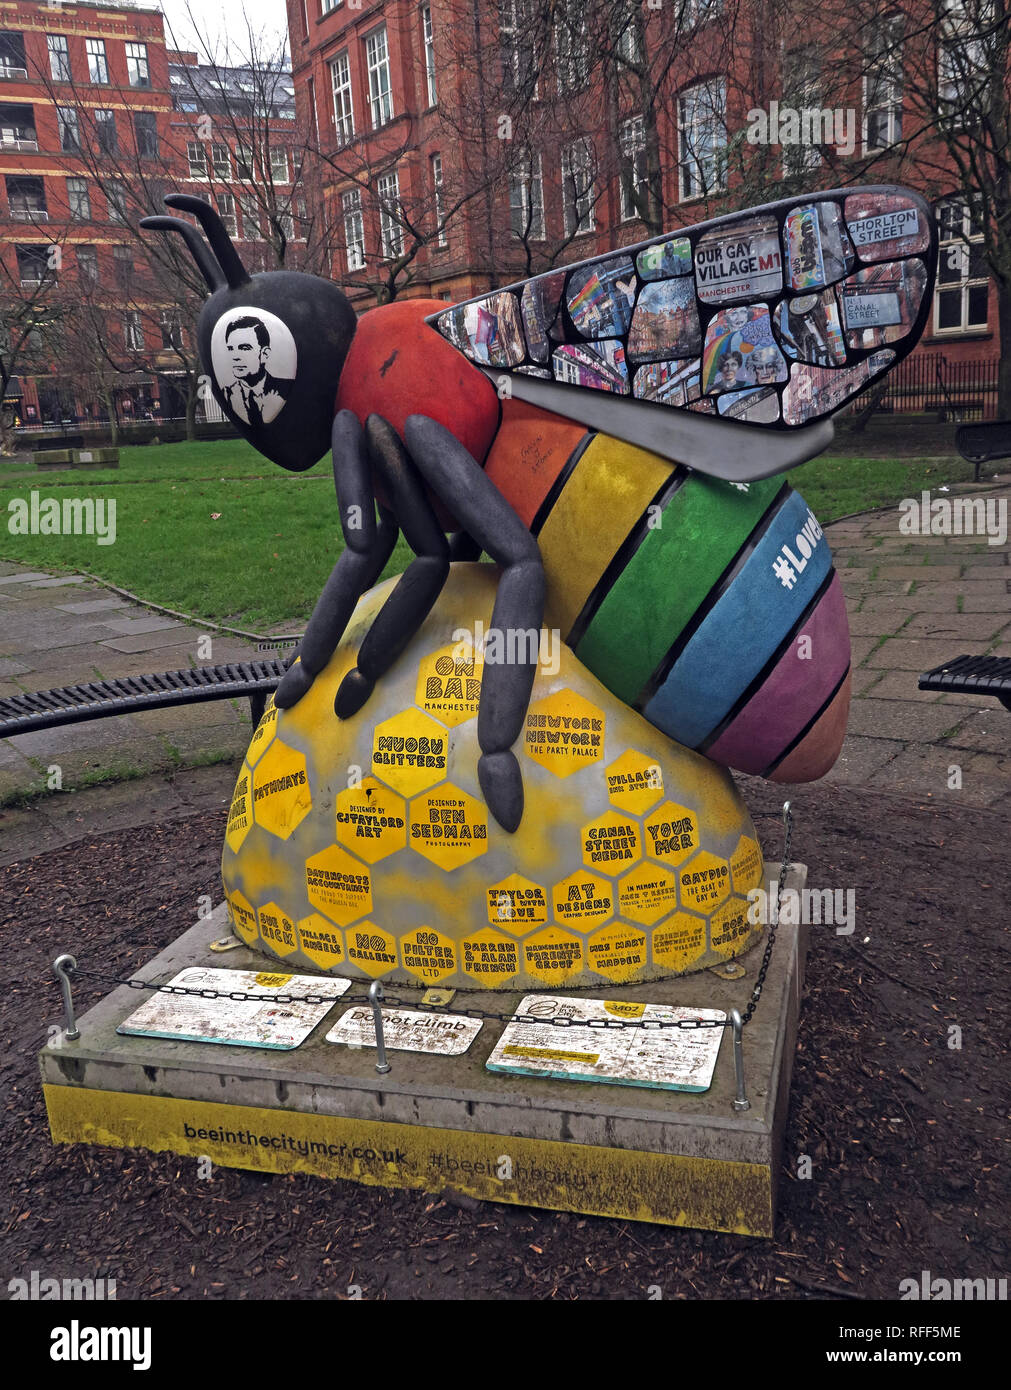 Abeille dans la ville - Jardins Sackville avec Alan Turing, Gay Village, Canal St, Manchester, Lancashire, England, UK Banque D'Images